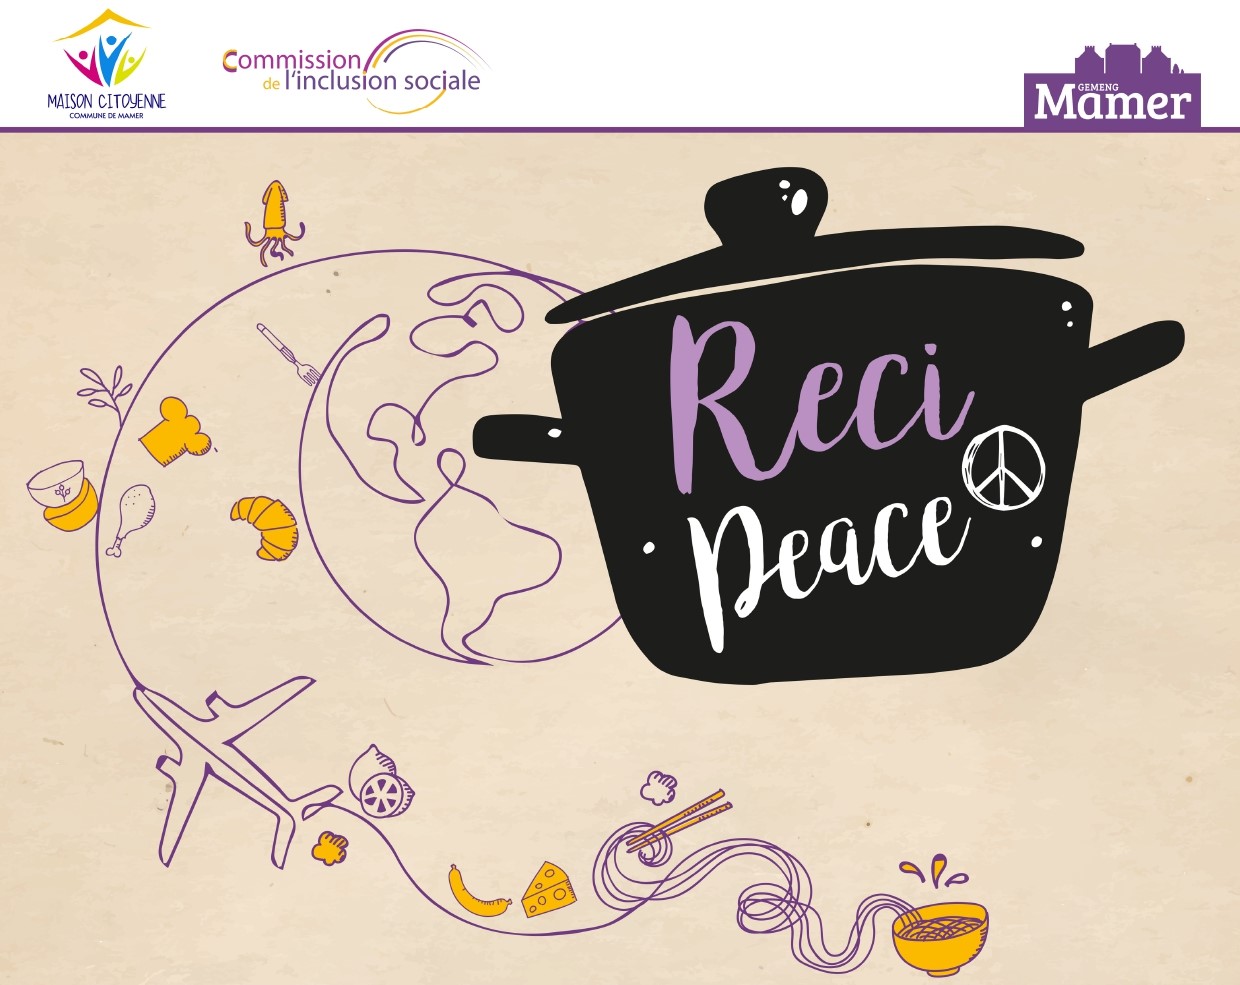 Participez au projet #ReciPeace et partagez vos recettes culinaires préférées